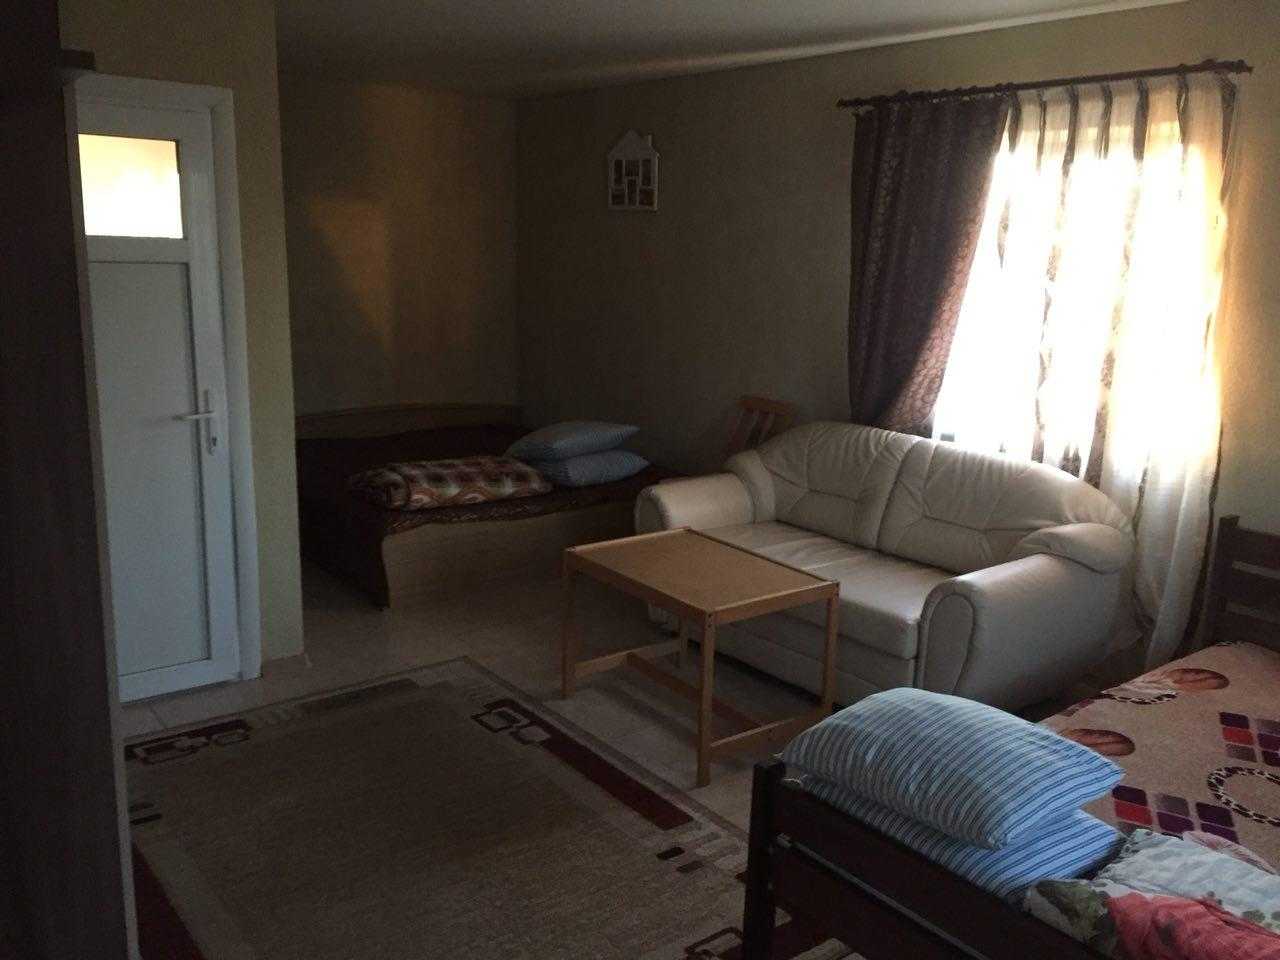 два двохспальні ліжка, комод, диван, стіл, стільці дзеркало